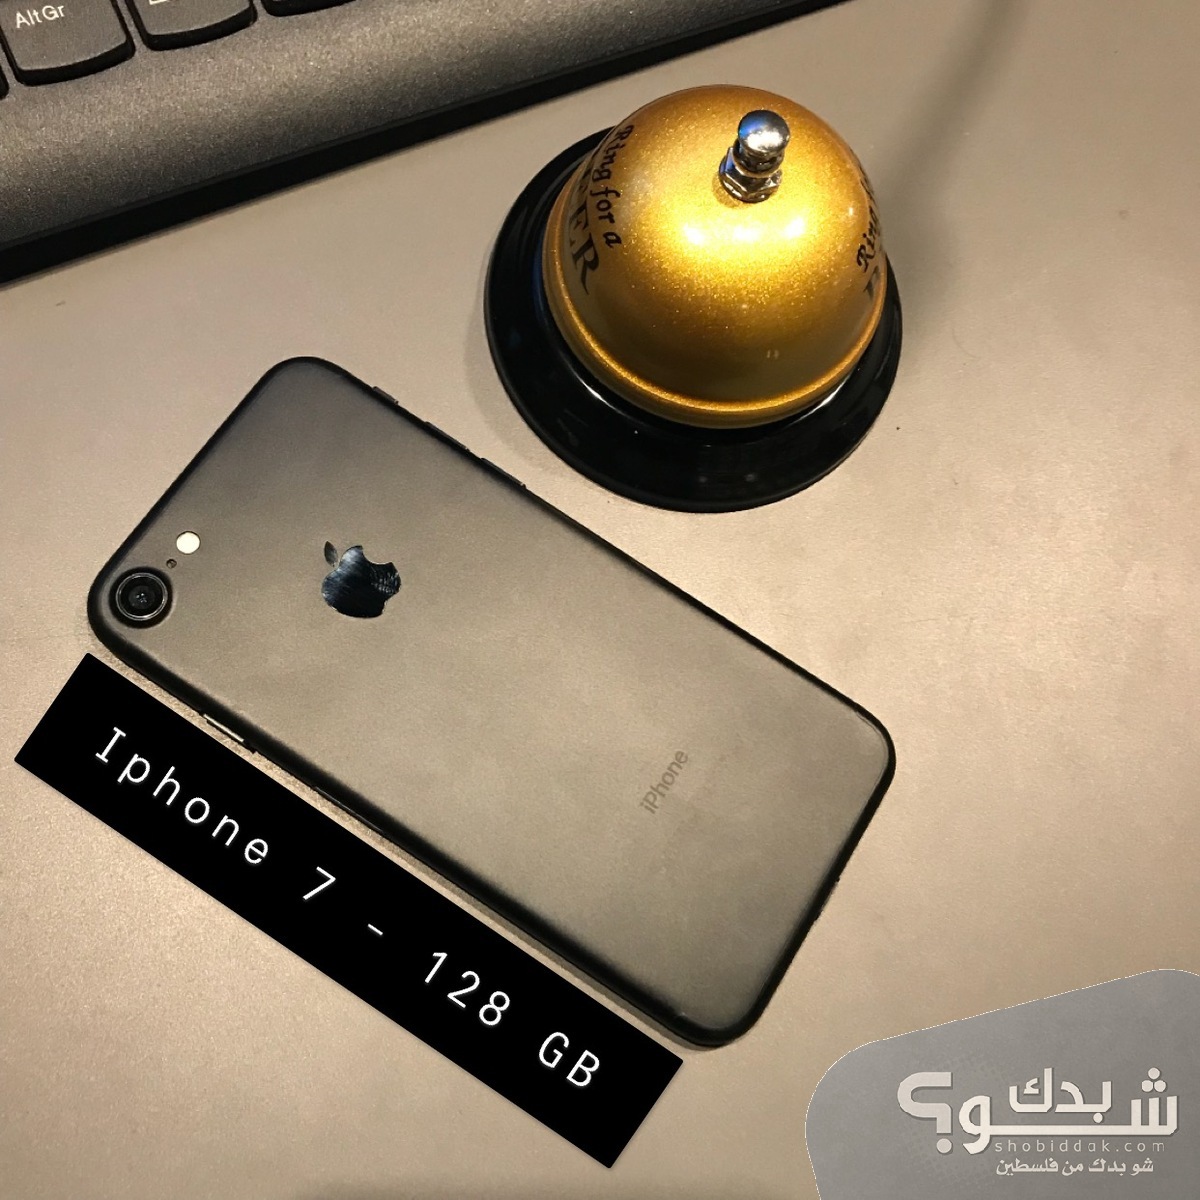 Apple ايفون 7 - مستعمل | شو بدك من فلسطين؟